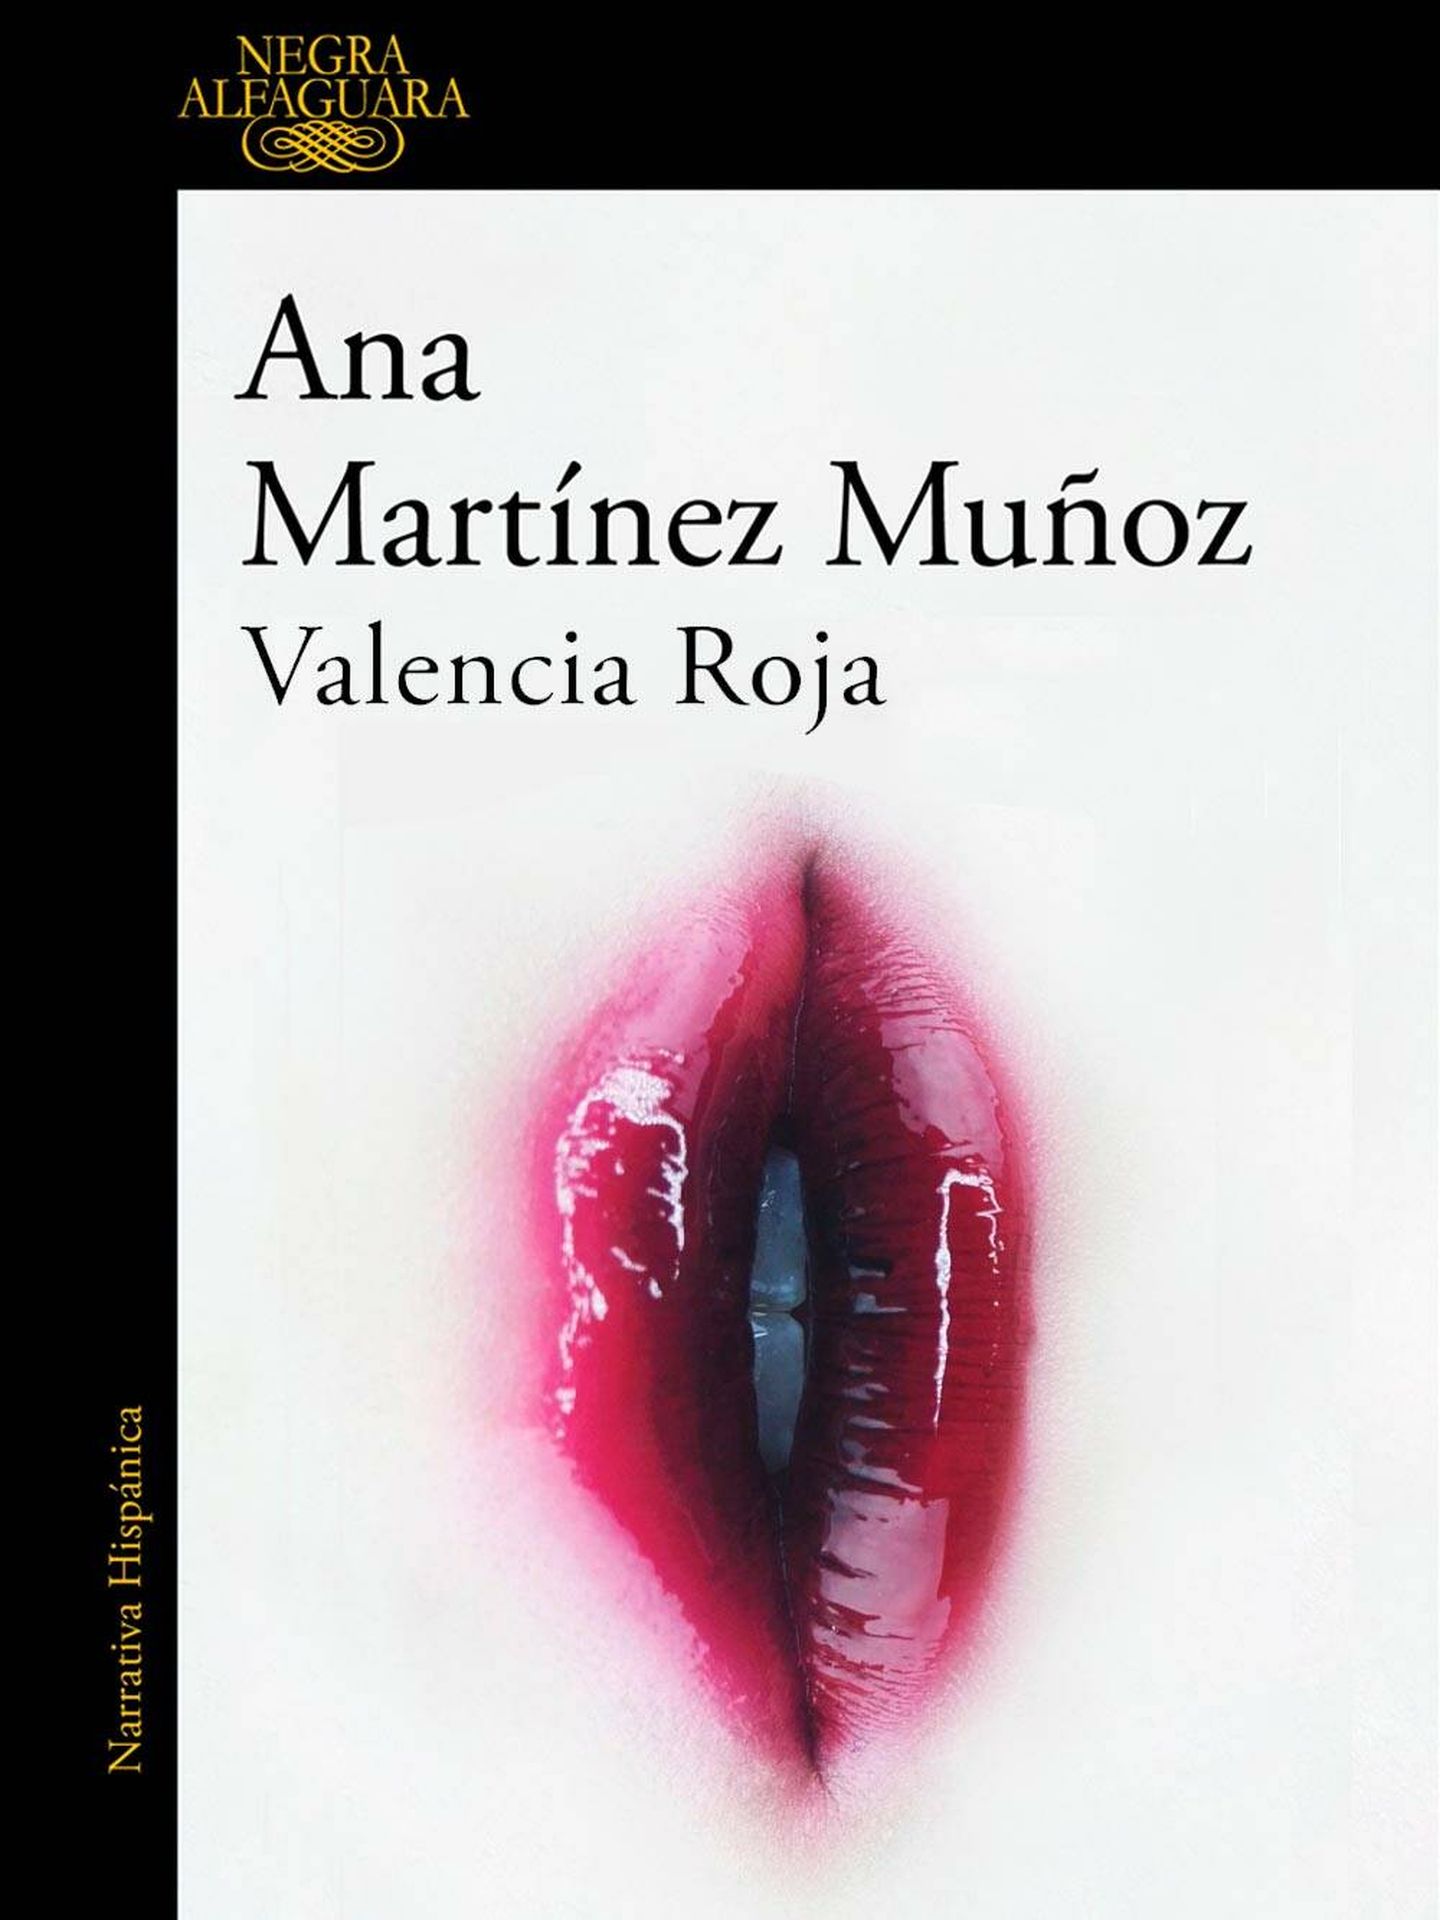 Portada de 'Valencia Roja', de Ana Martínez Muñoz.